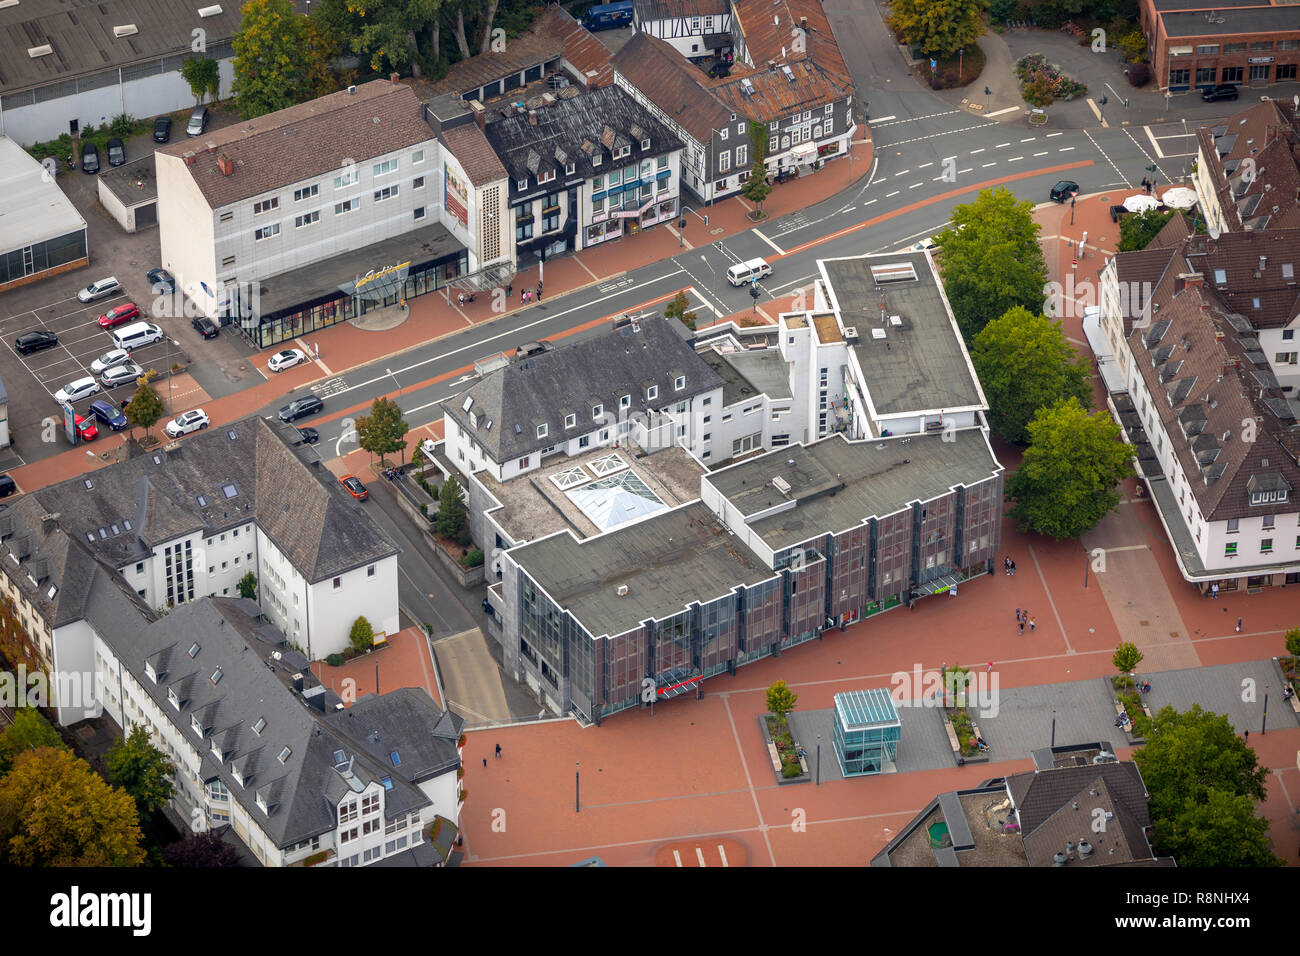 Aerial view, Marktplatz Kreuztal, Stadtverwaltung Kreuztal, Siegener Straße, Kreis Siegen-Wittgenstein, North Rhine-Westphalia, Germany, Europe, Kreuz Stock Photo